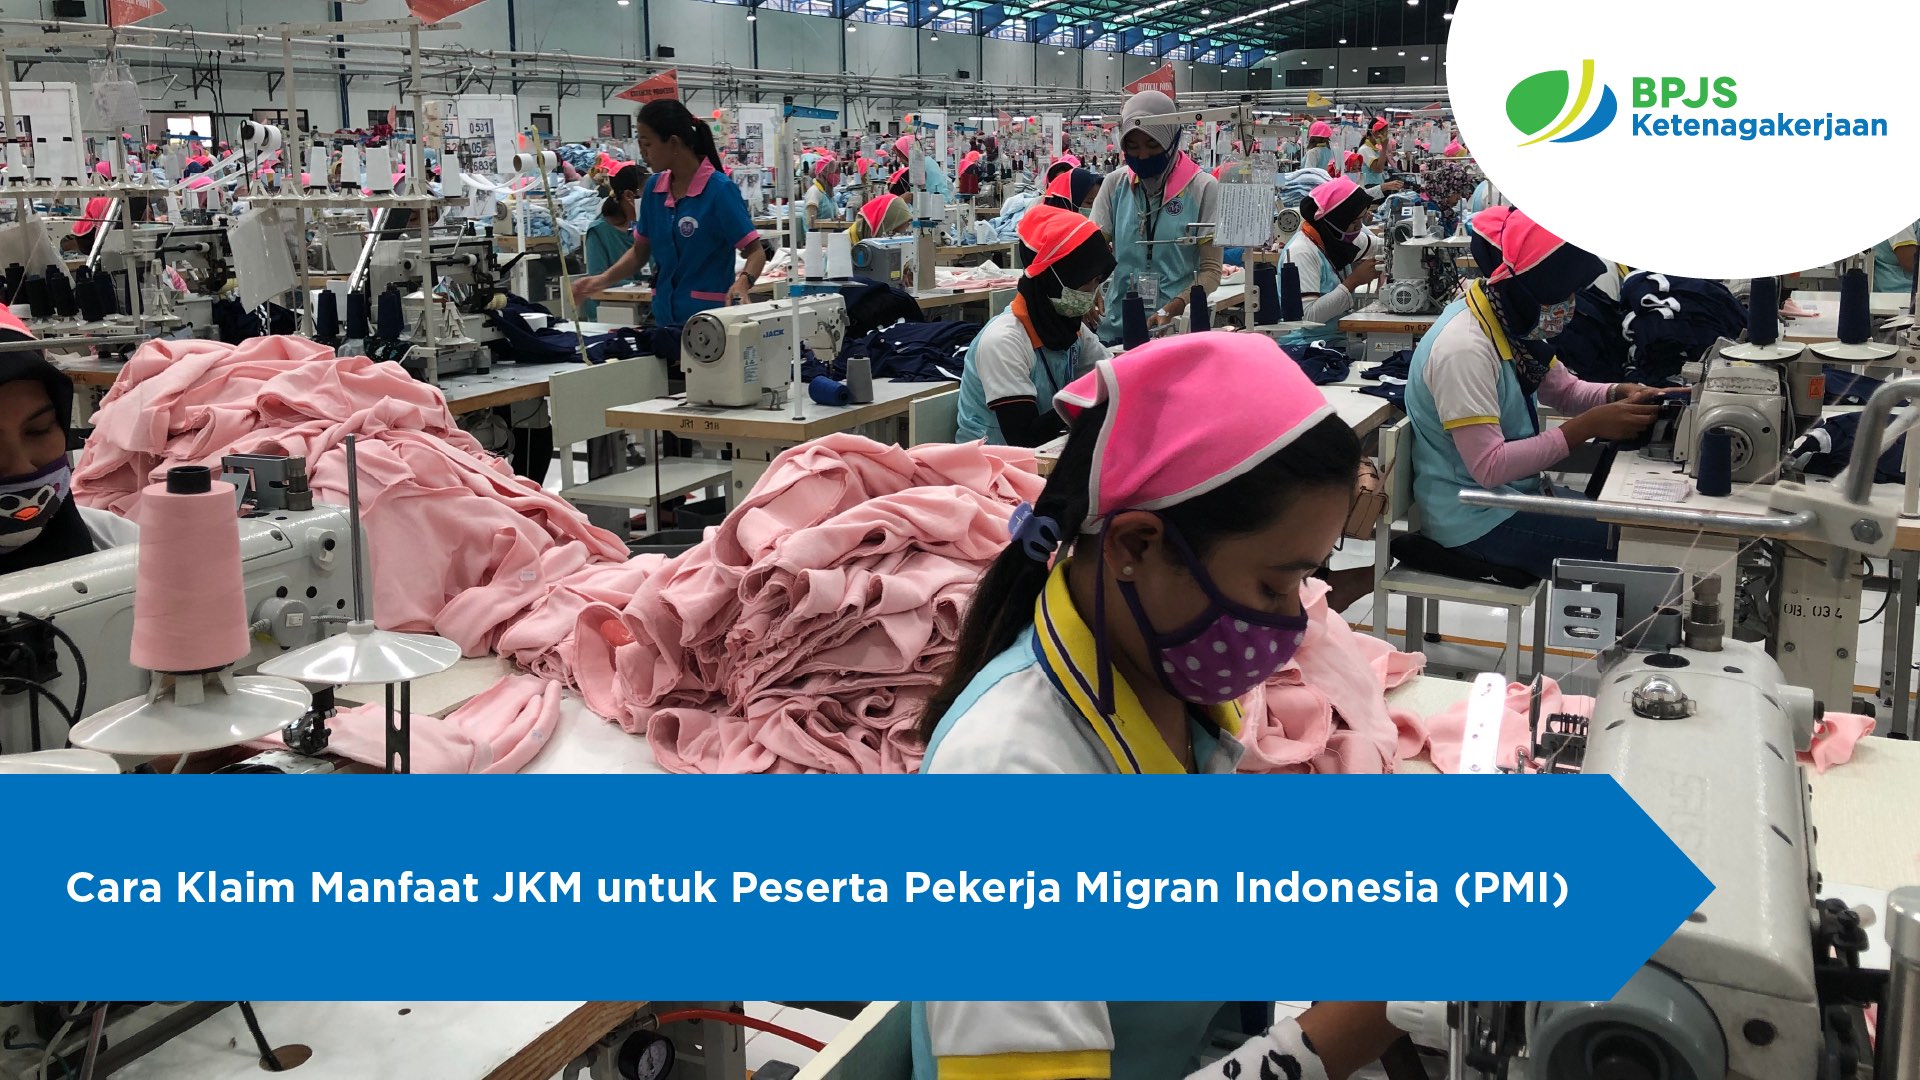 Cara Klaim Manfaat JKM untuk Peserta Pekerja Migran Indonesia (PMI)